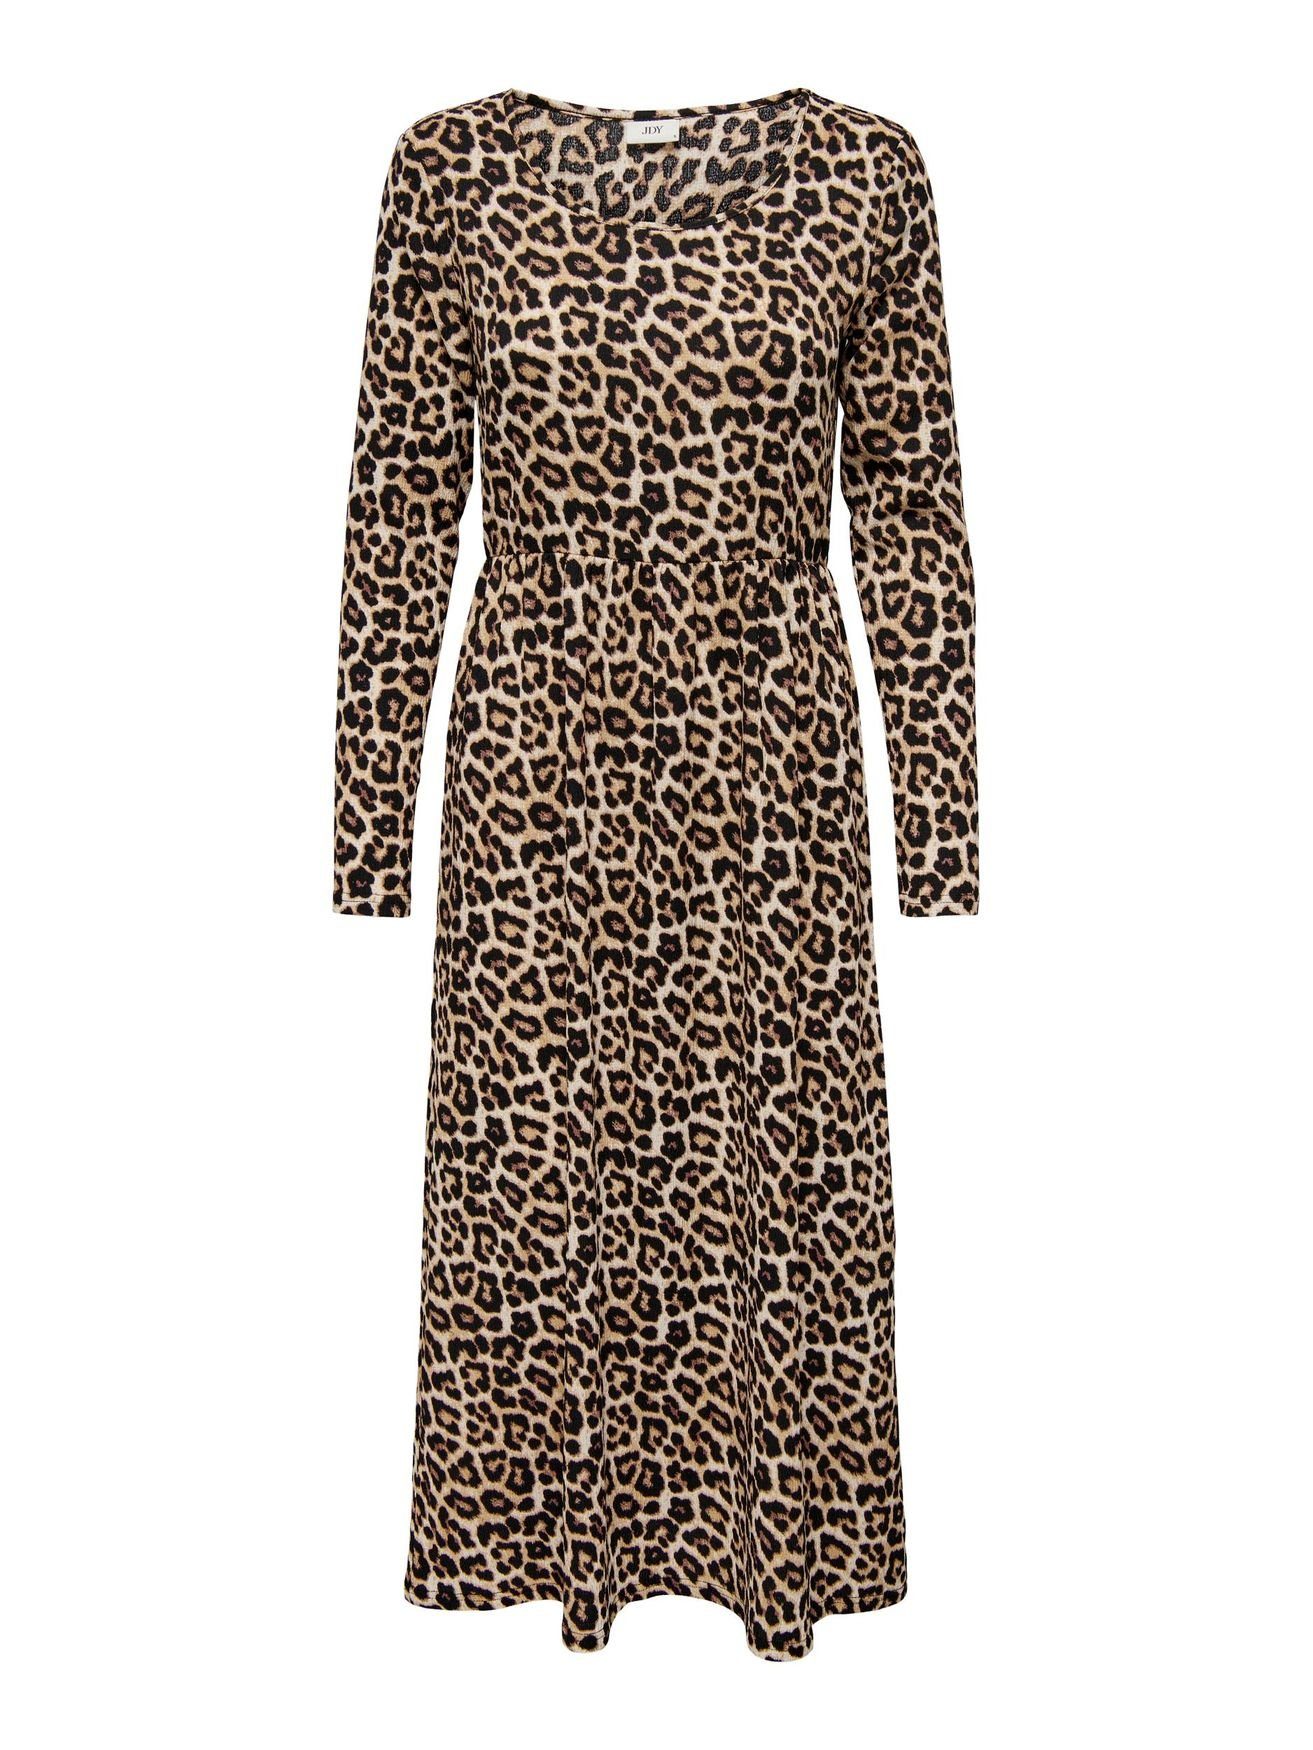 JACQUELINE de YONG Shirtkleid Langes Langarm Kleid Animal Print Midi Dress JDYLOTUS (lang) 5412 in Braun | Shirtkleider